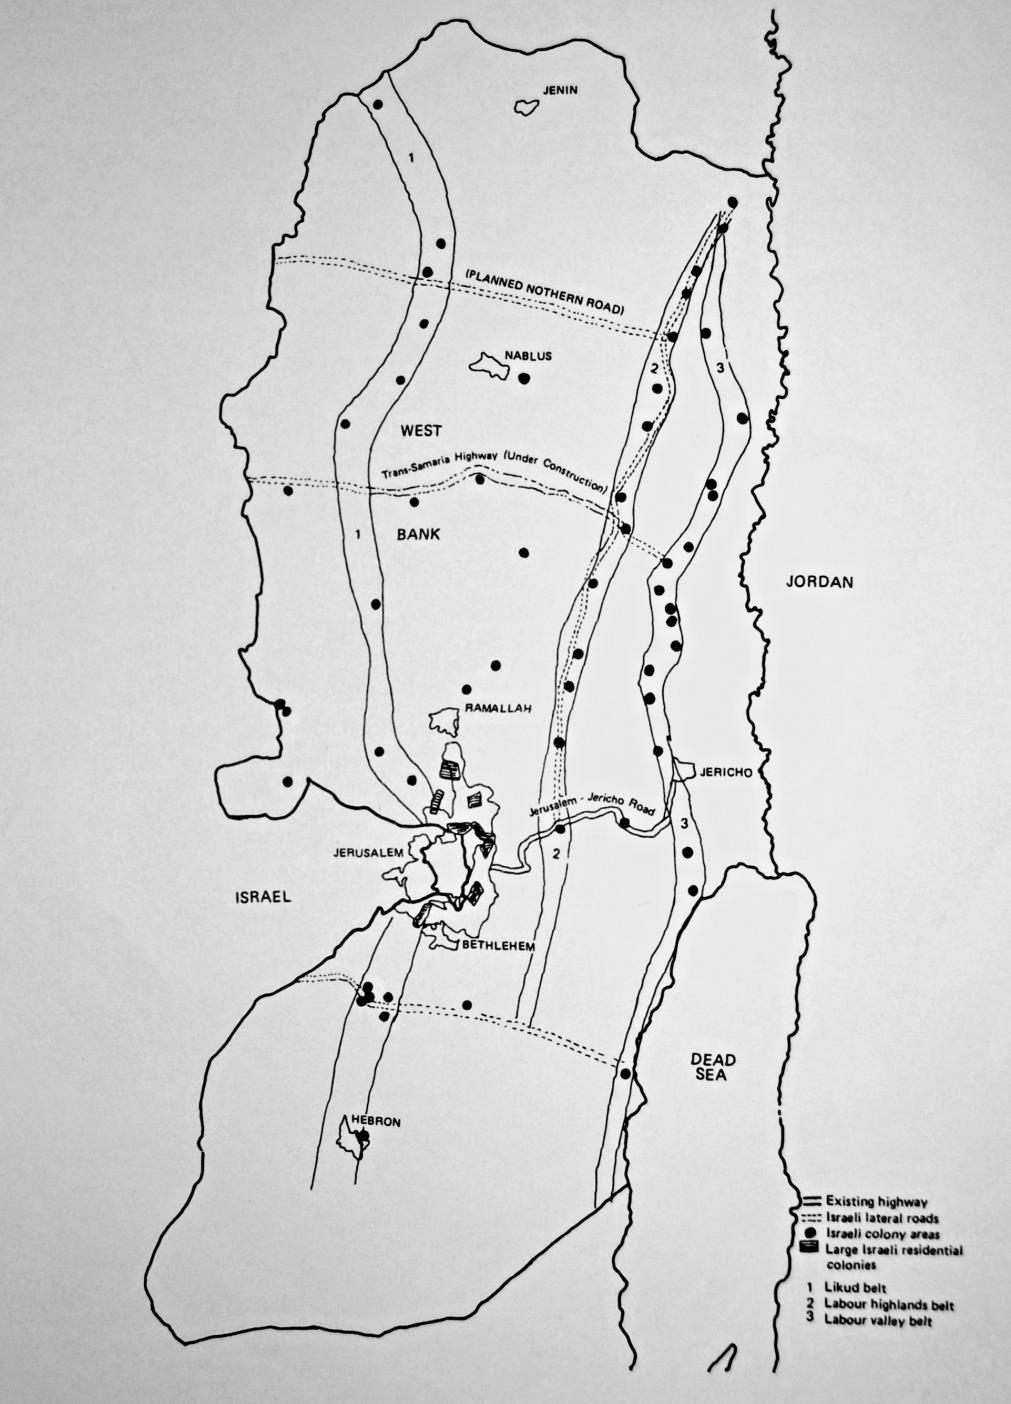 70 Příloha č. 3: Mapa osadnických bloků dle: llonova plánu (pás č. 3), Labouristů (pás č. 2) a Likudu (pás č. 1) Zdroj: MATAR, I.